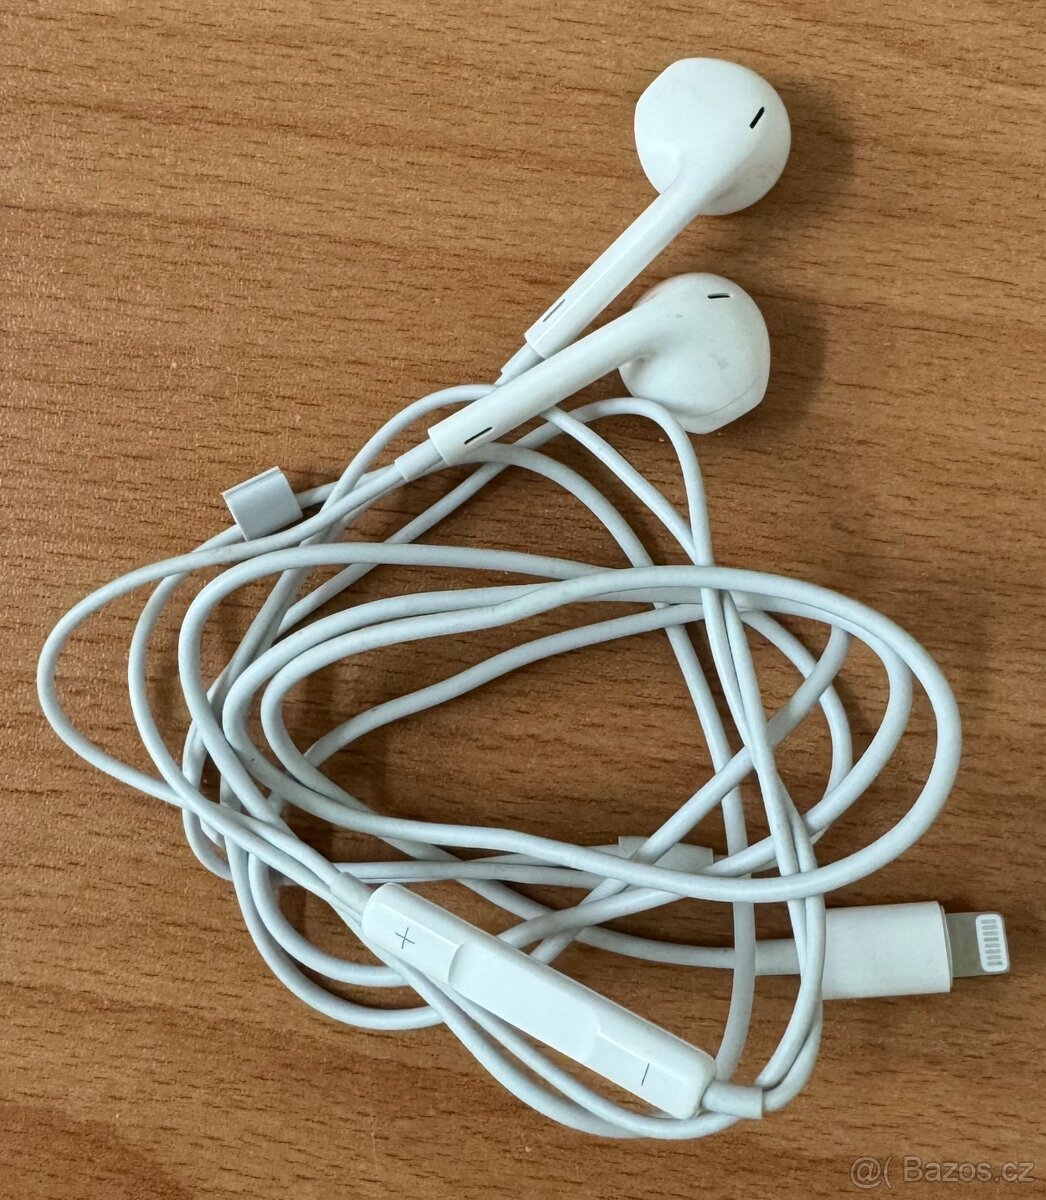 Prodám originál drátová Apple sluchátka EarPods s lightning